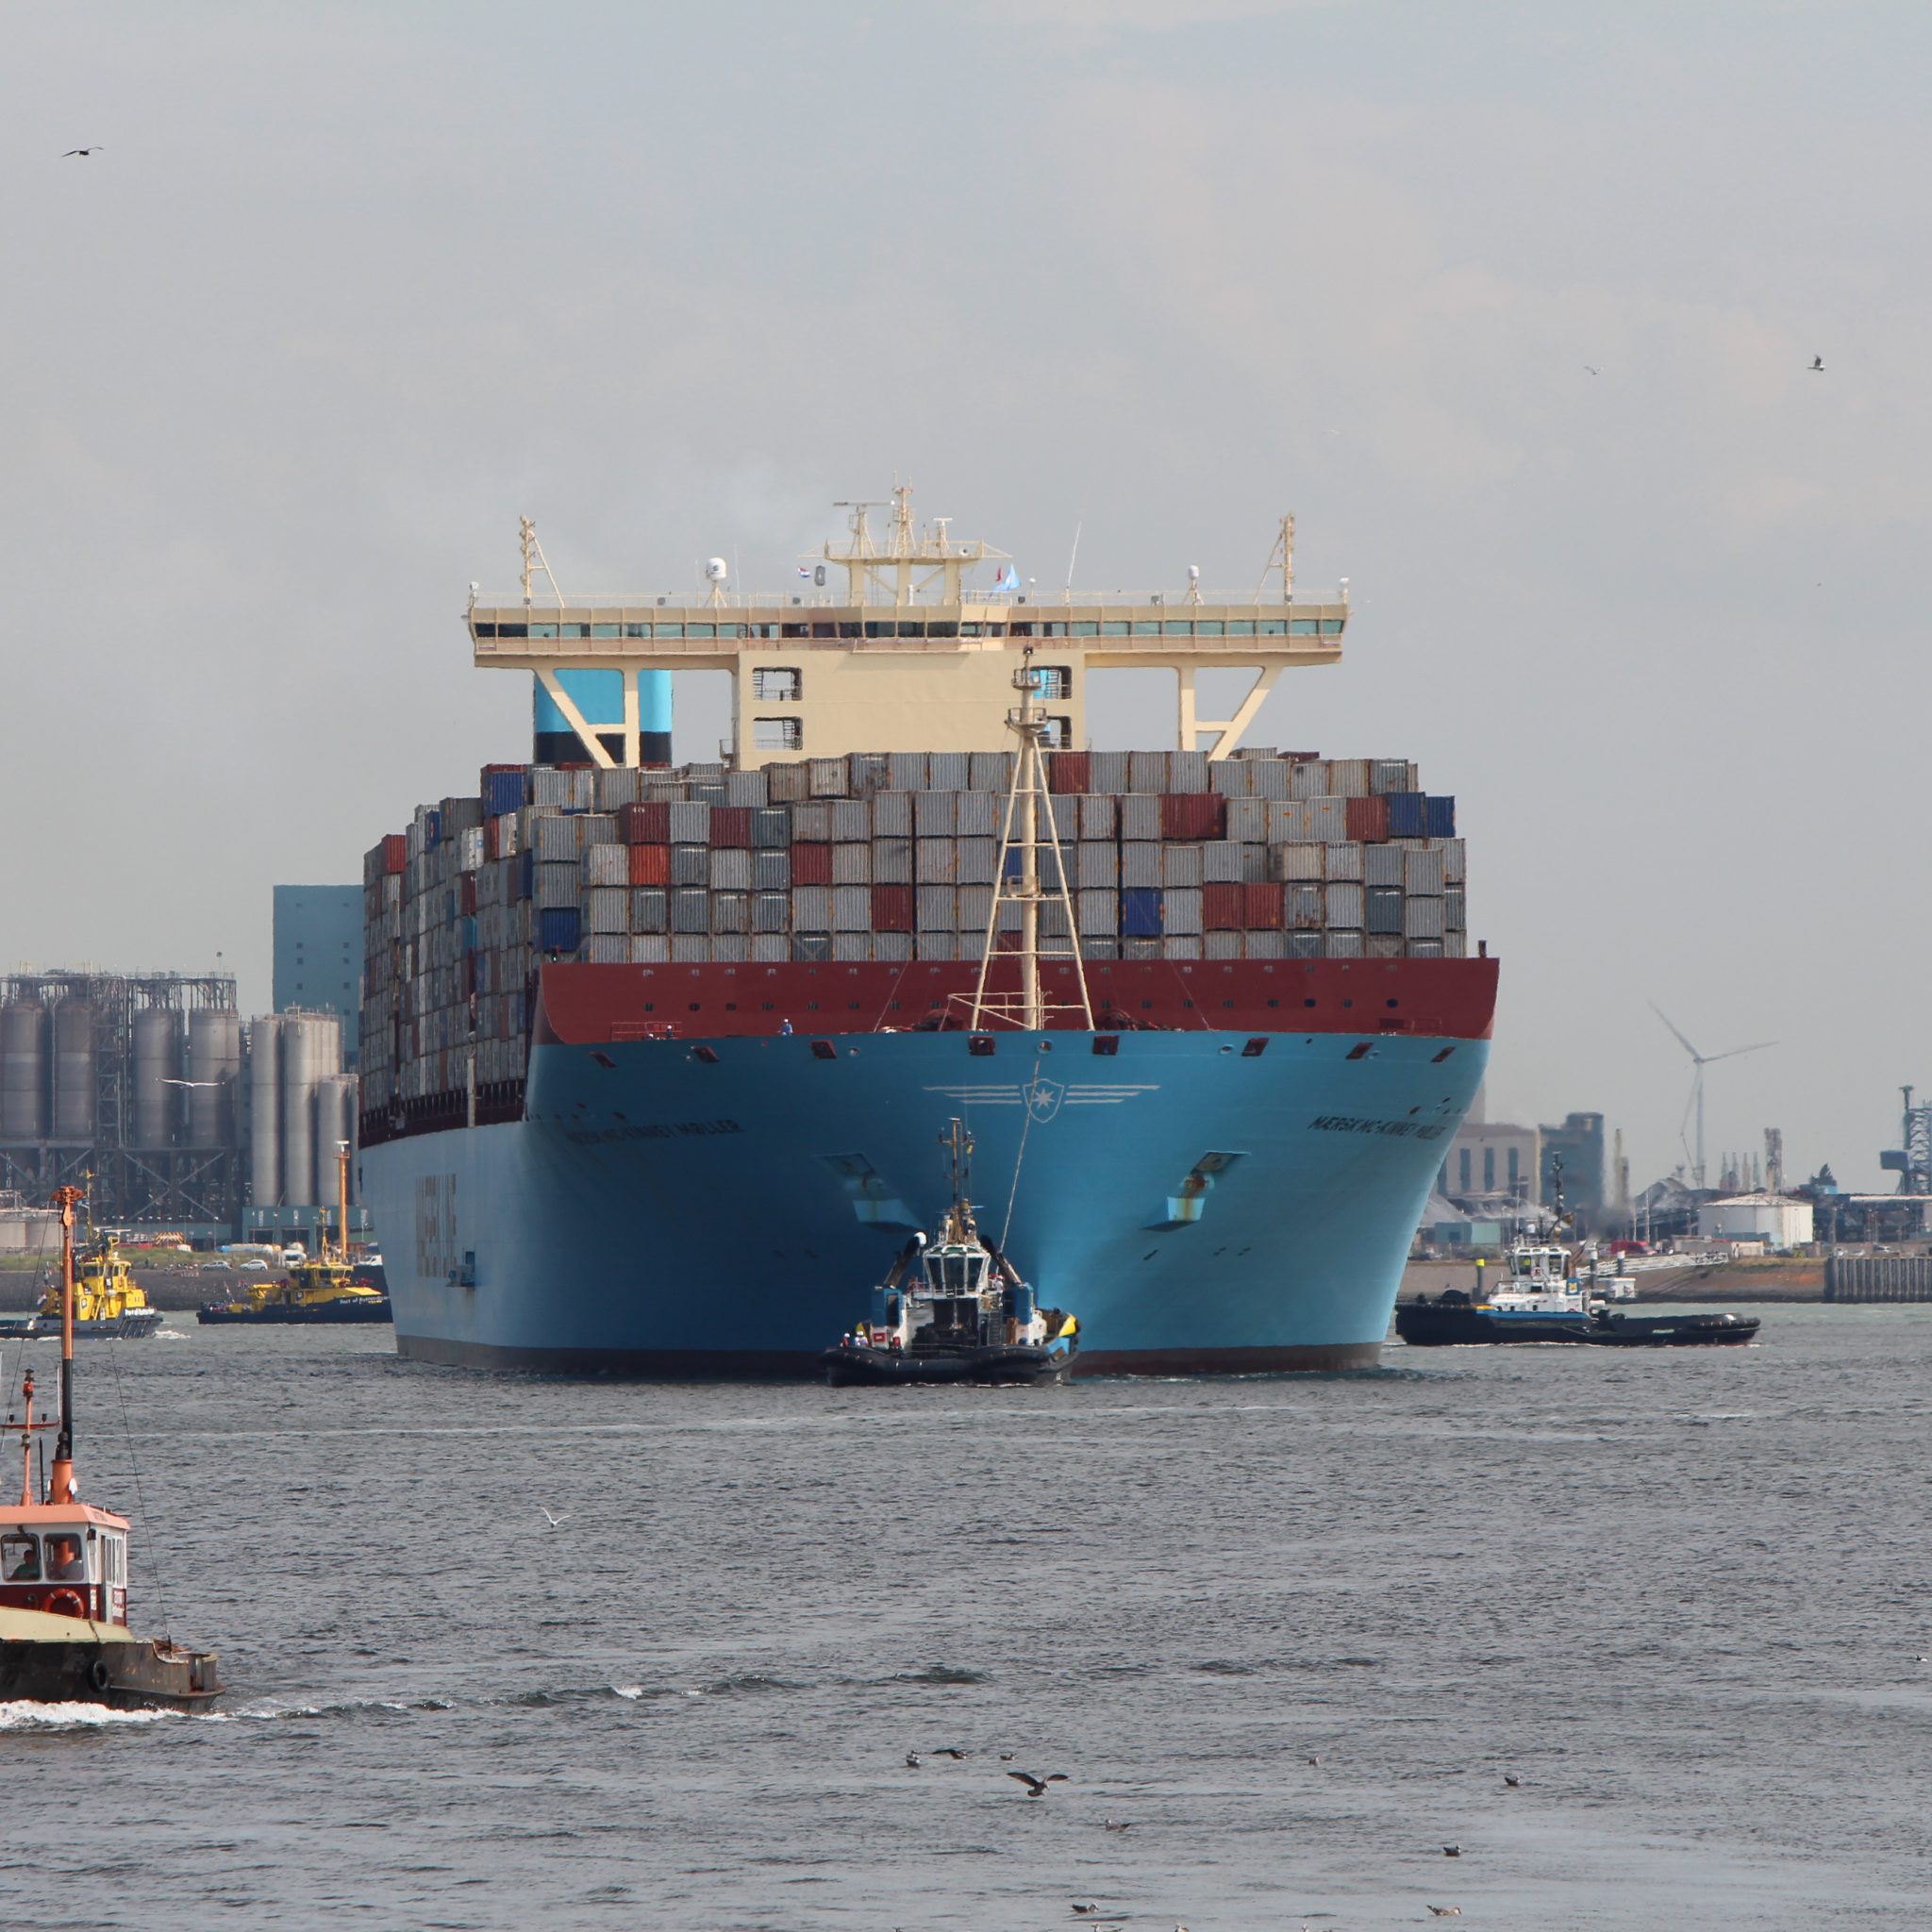 Een beeld uit betere tijden: de Maersk McKinney-Møller wordt in 2013 binnengehaald door Smit-slepers. (Archieffoto Schuttevaer)